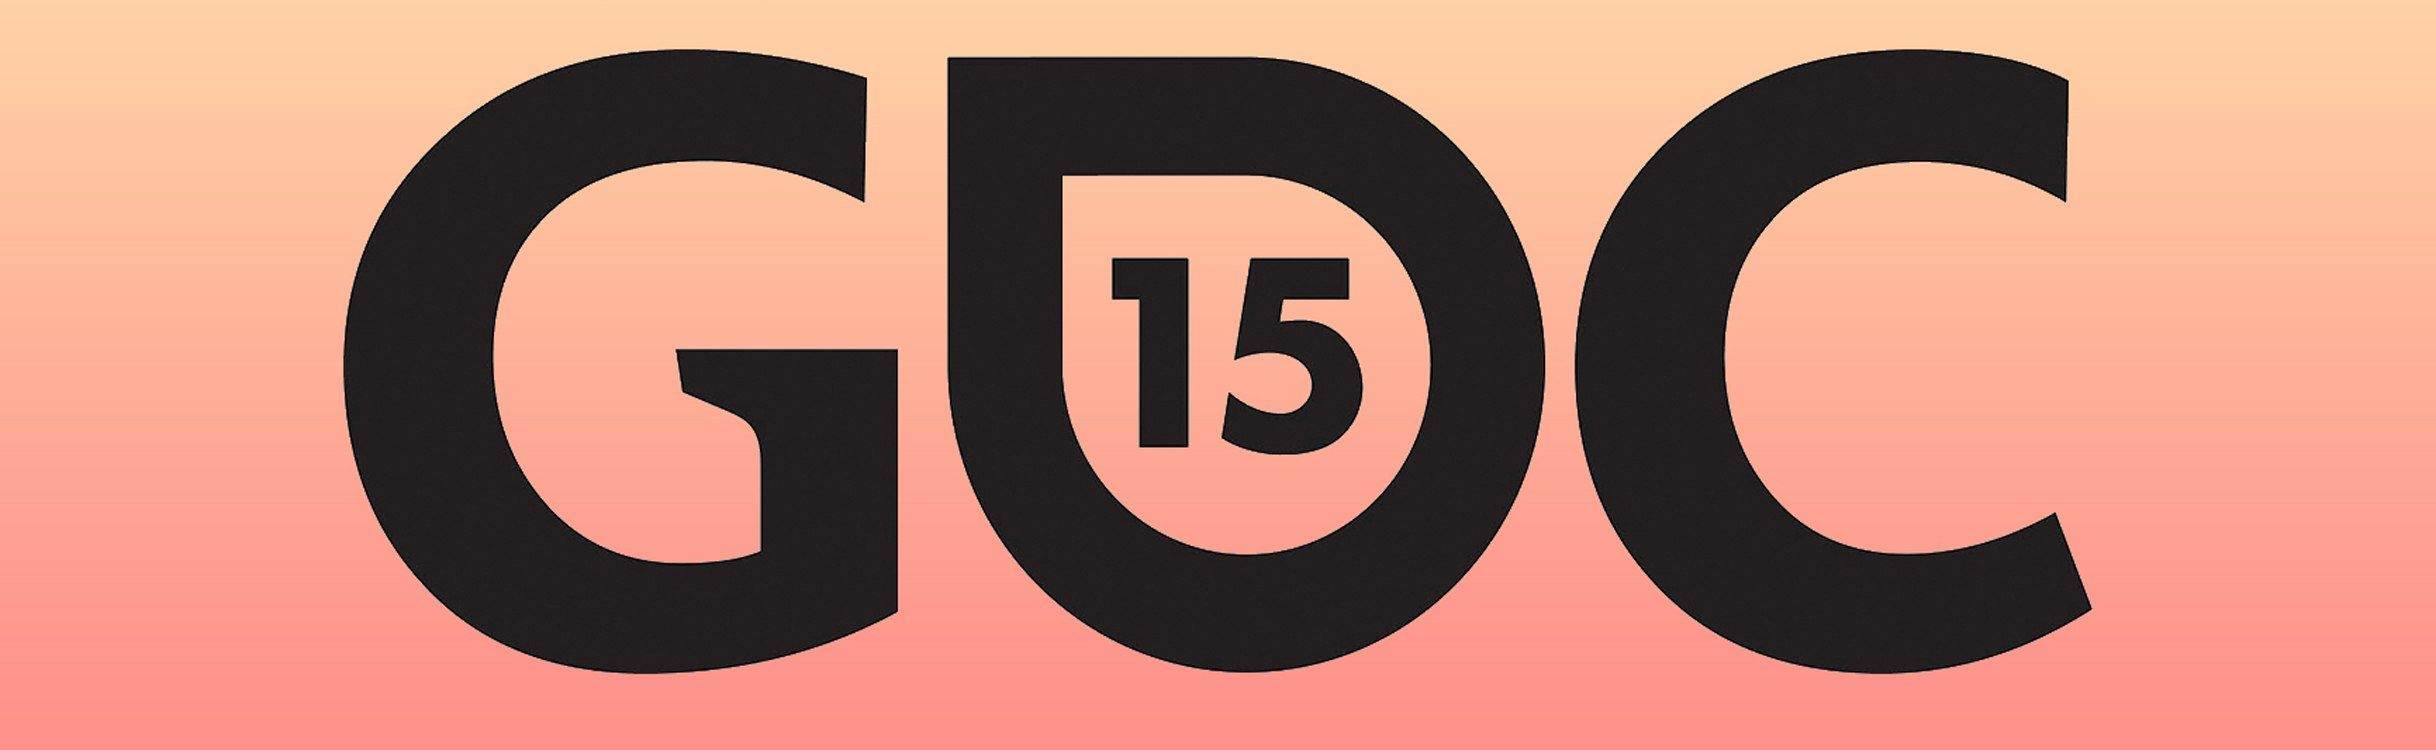 Краткие итоги выставки GDC 2015